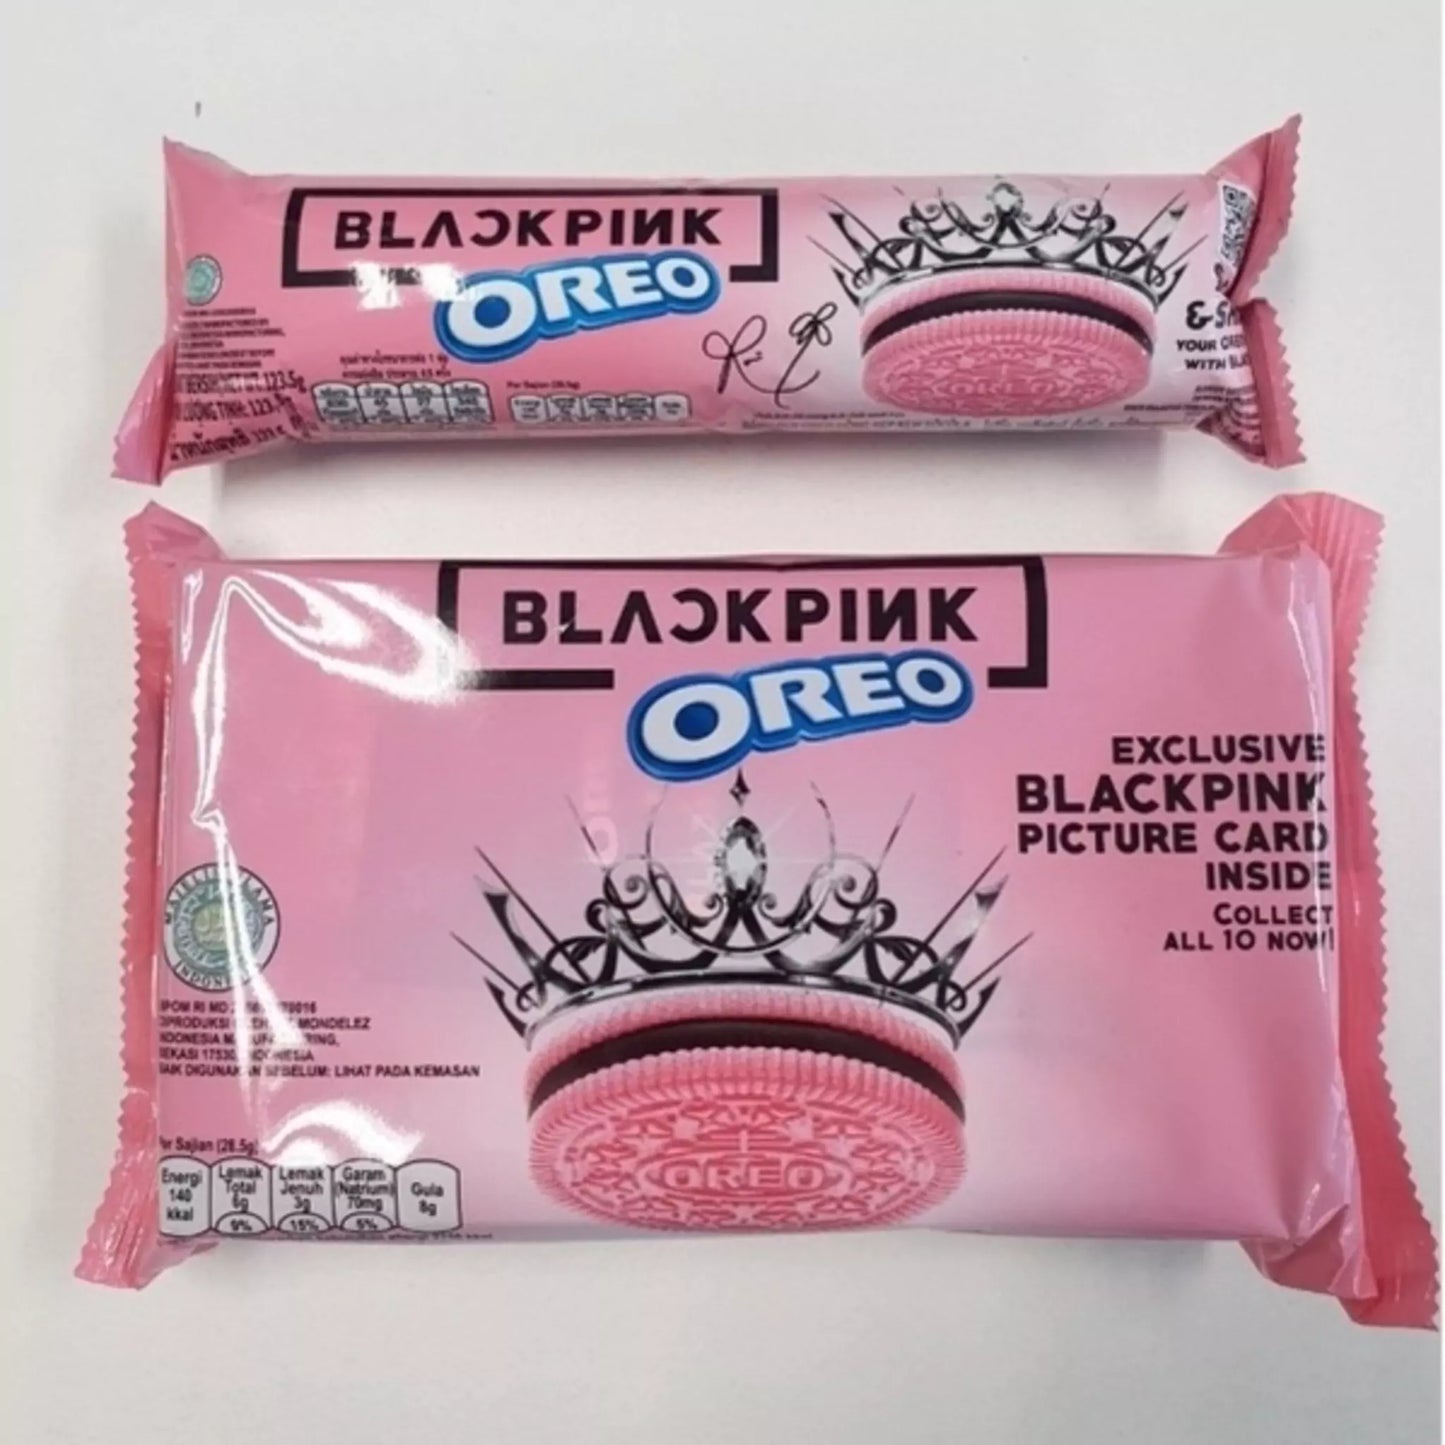 オレオ Blackpink Pink 限定 Blackpink ピクチャーカード賞品付きボックス